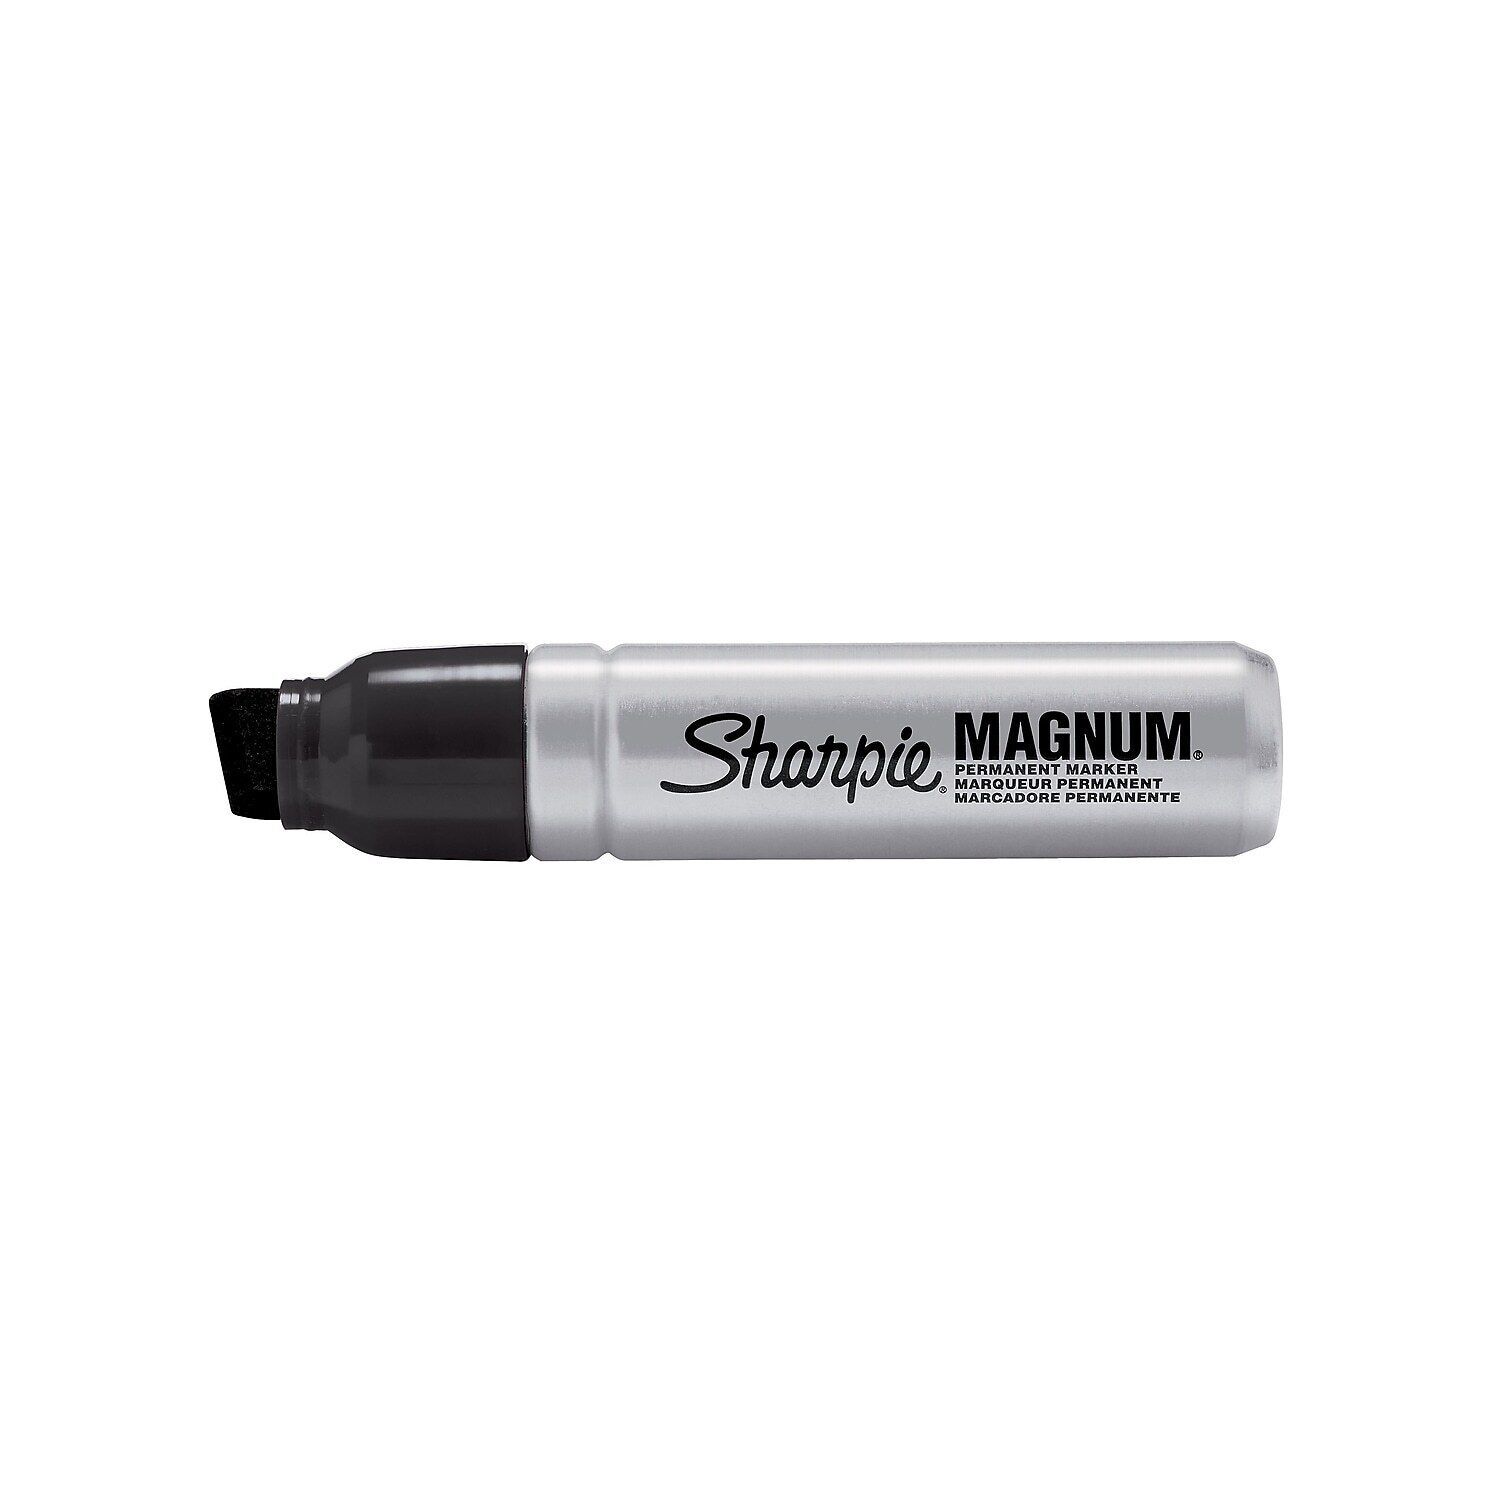 Sharpie Mean Streak Marking Stick Broad Tip White